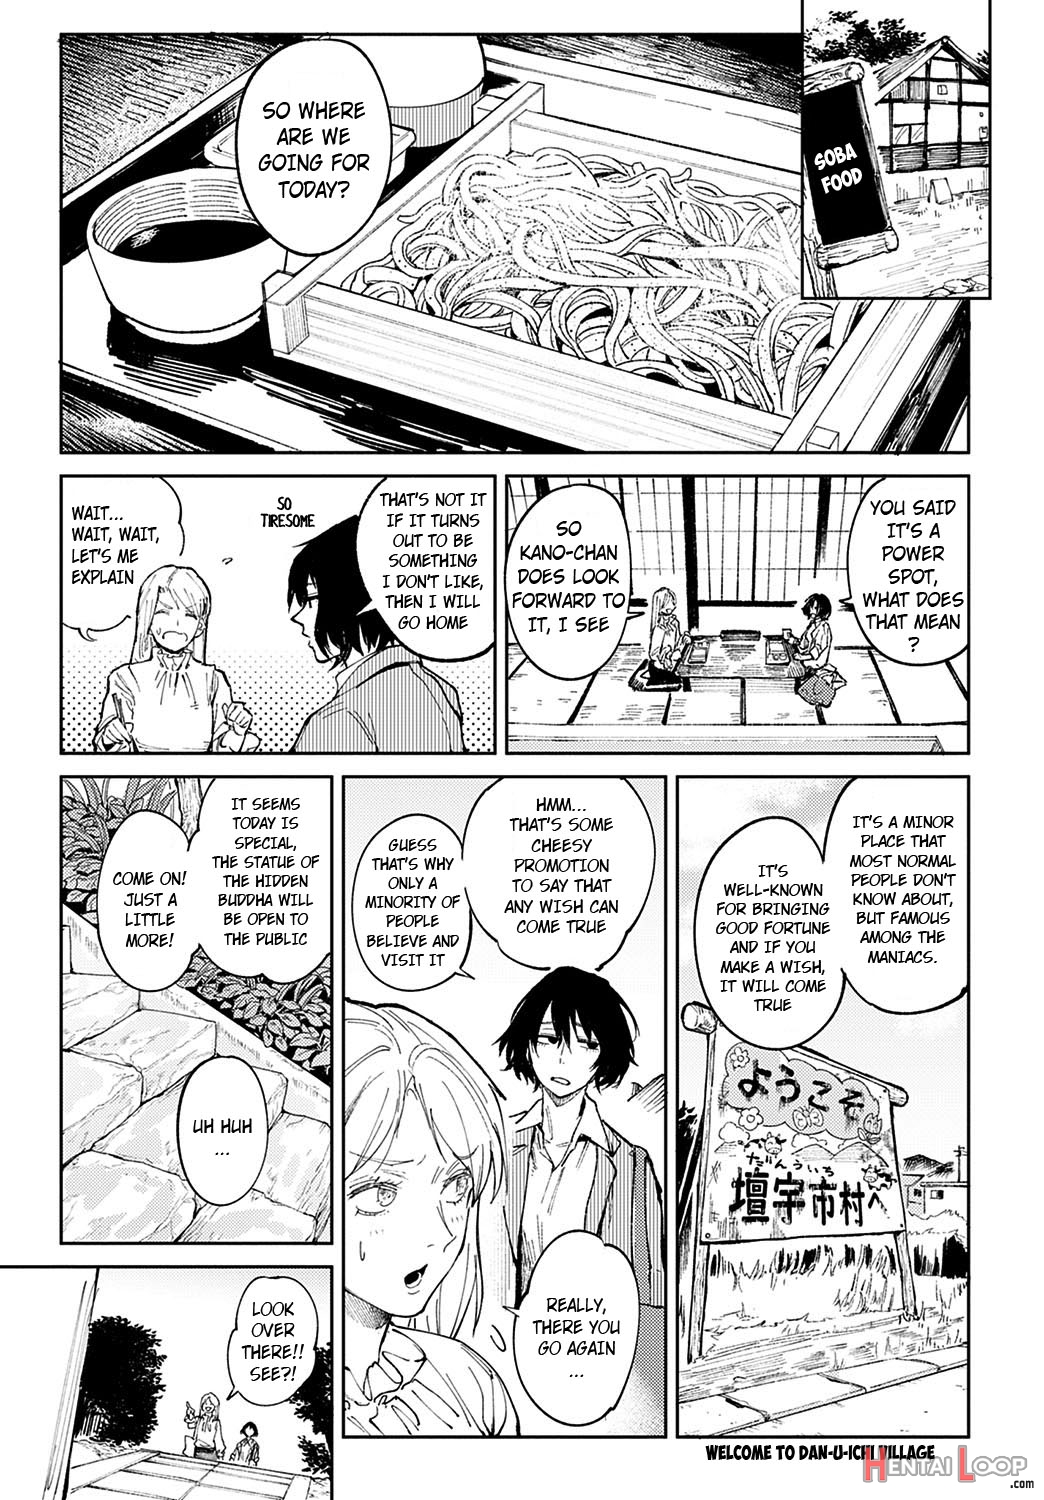 Giketsu Kyouketsu page 3